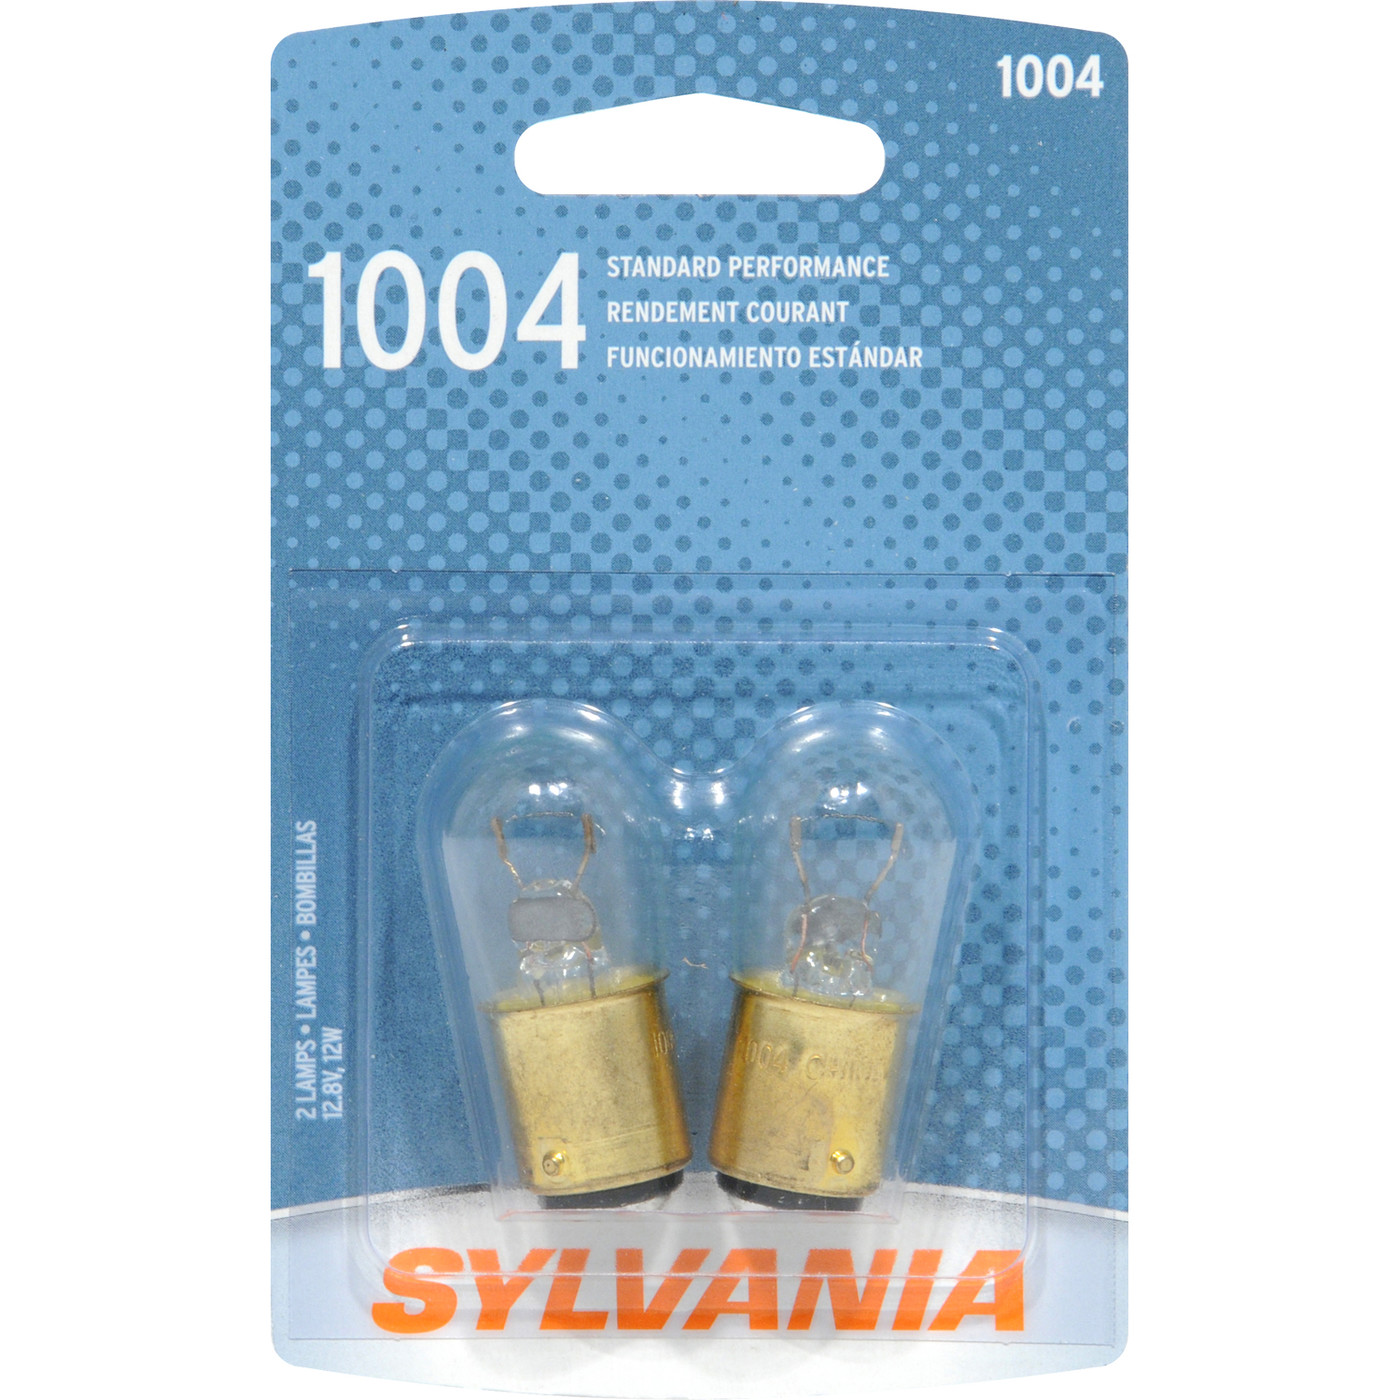 SYLVANIA RETAIL PACKS - Blister Pack Twin Courtesy Light Bulb - SYR 1004.BP2